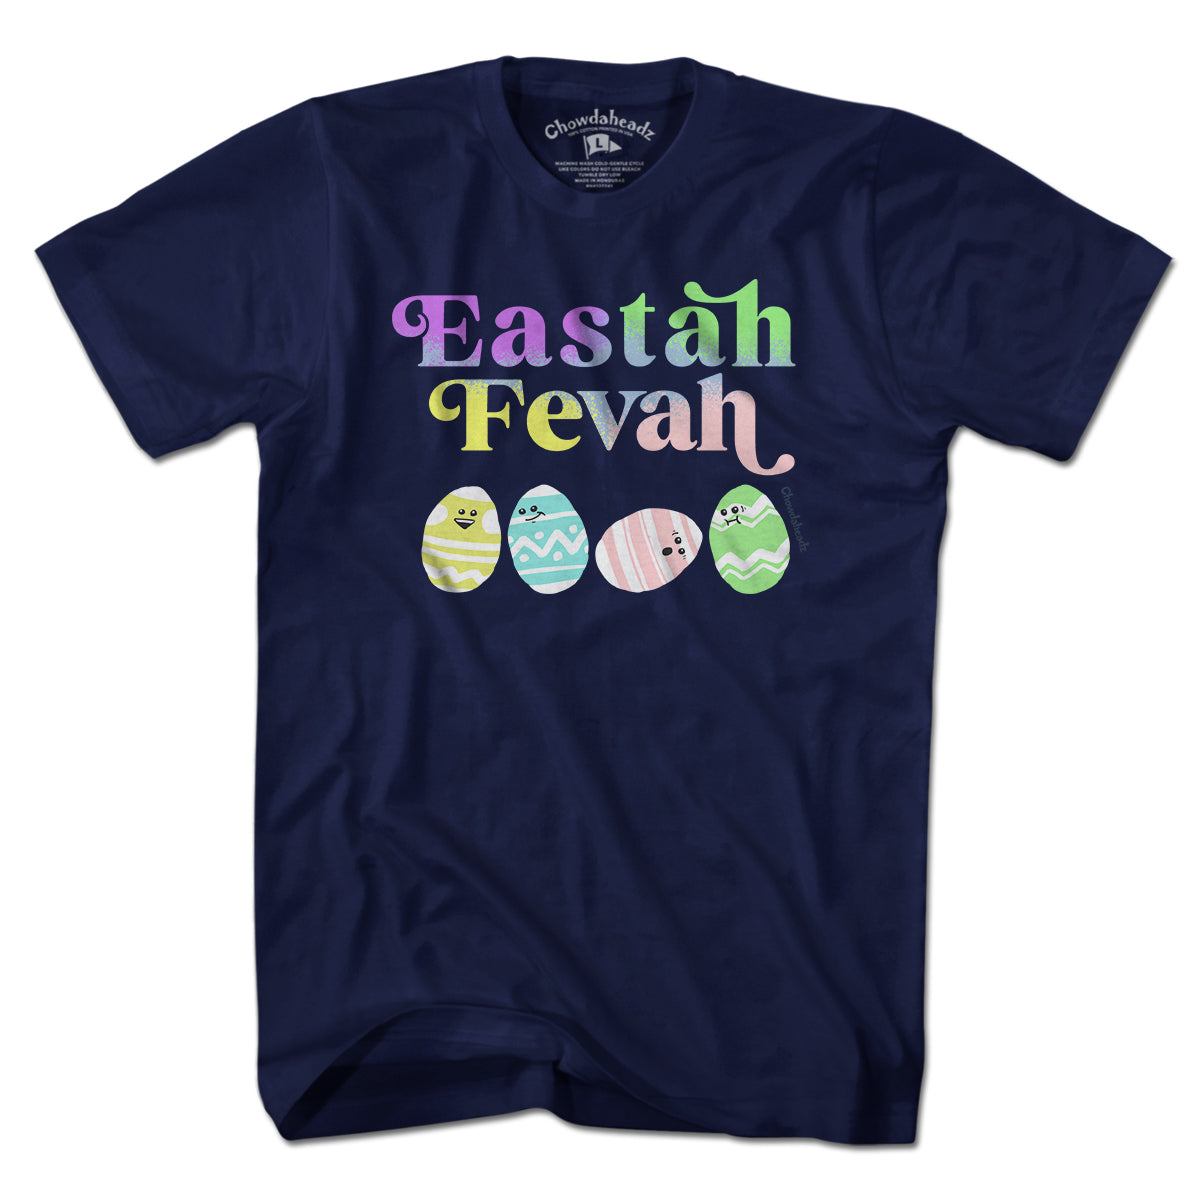 Eastah Fevah T-Shirt - Chowdaheadz